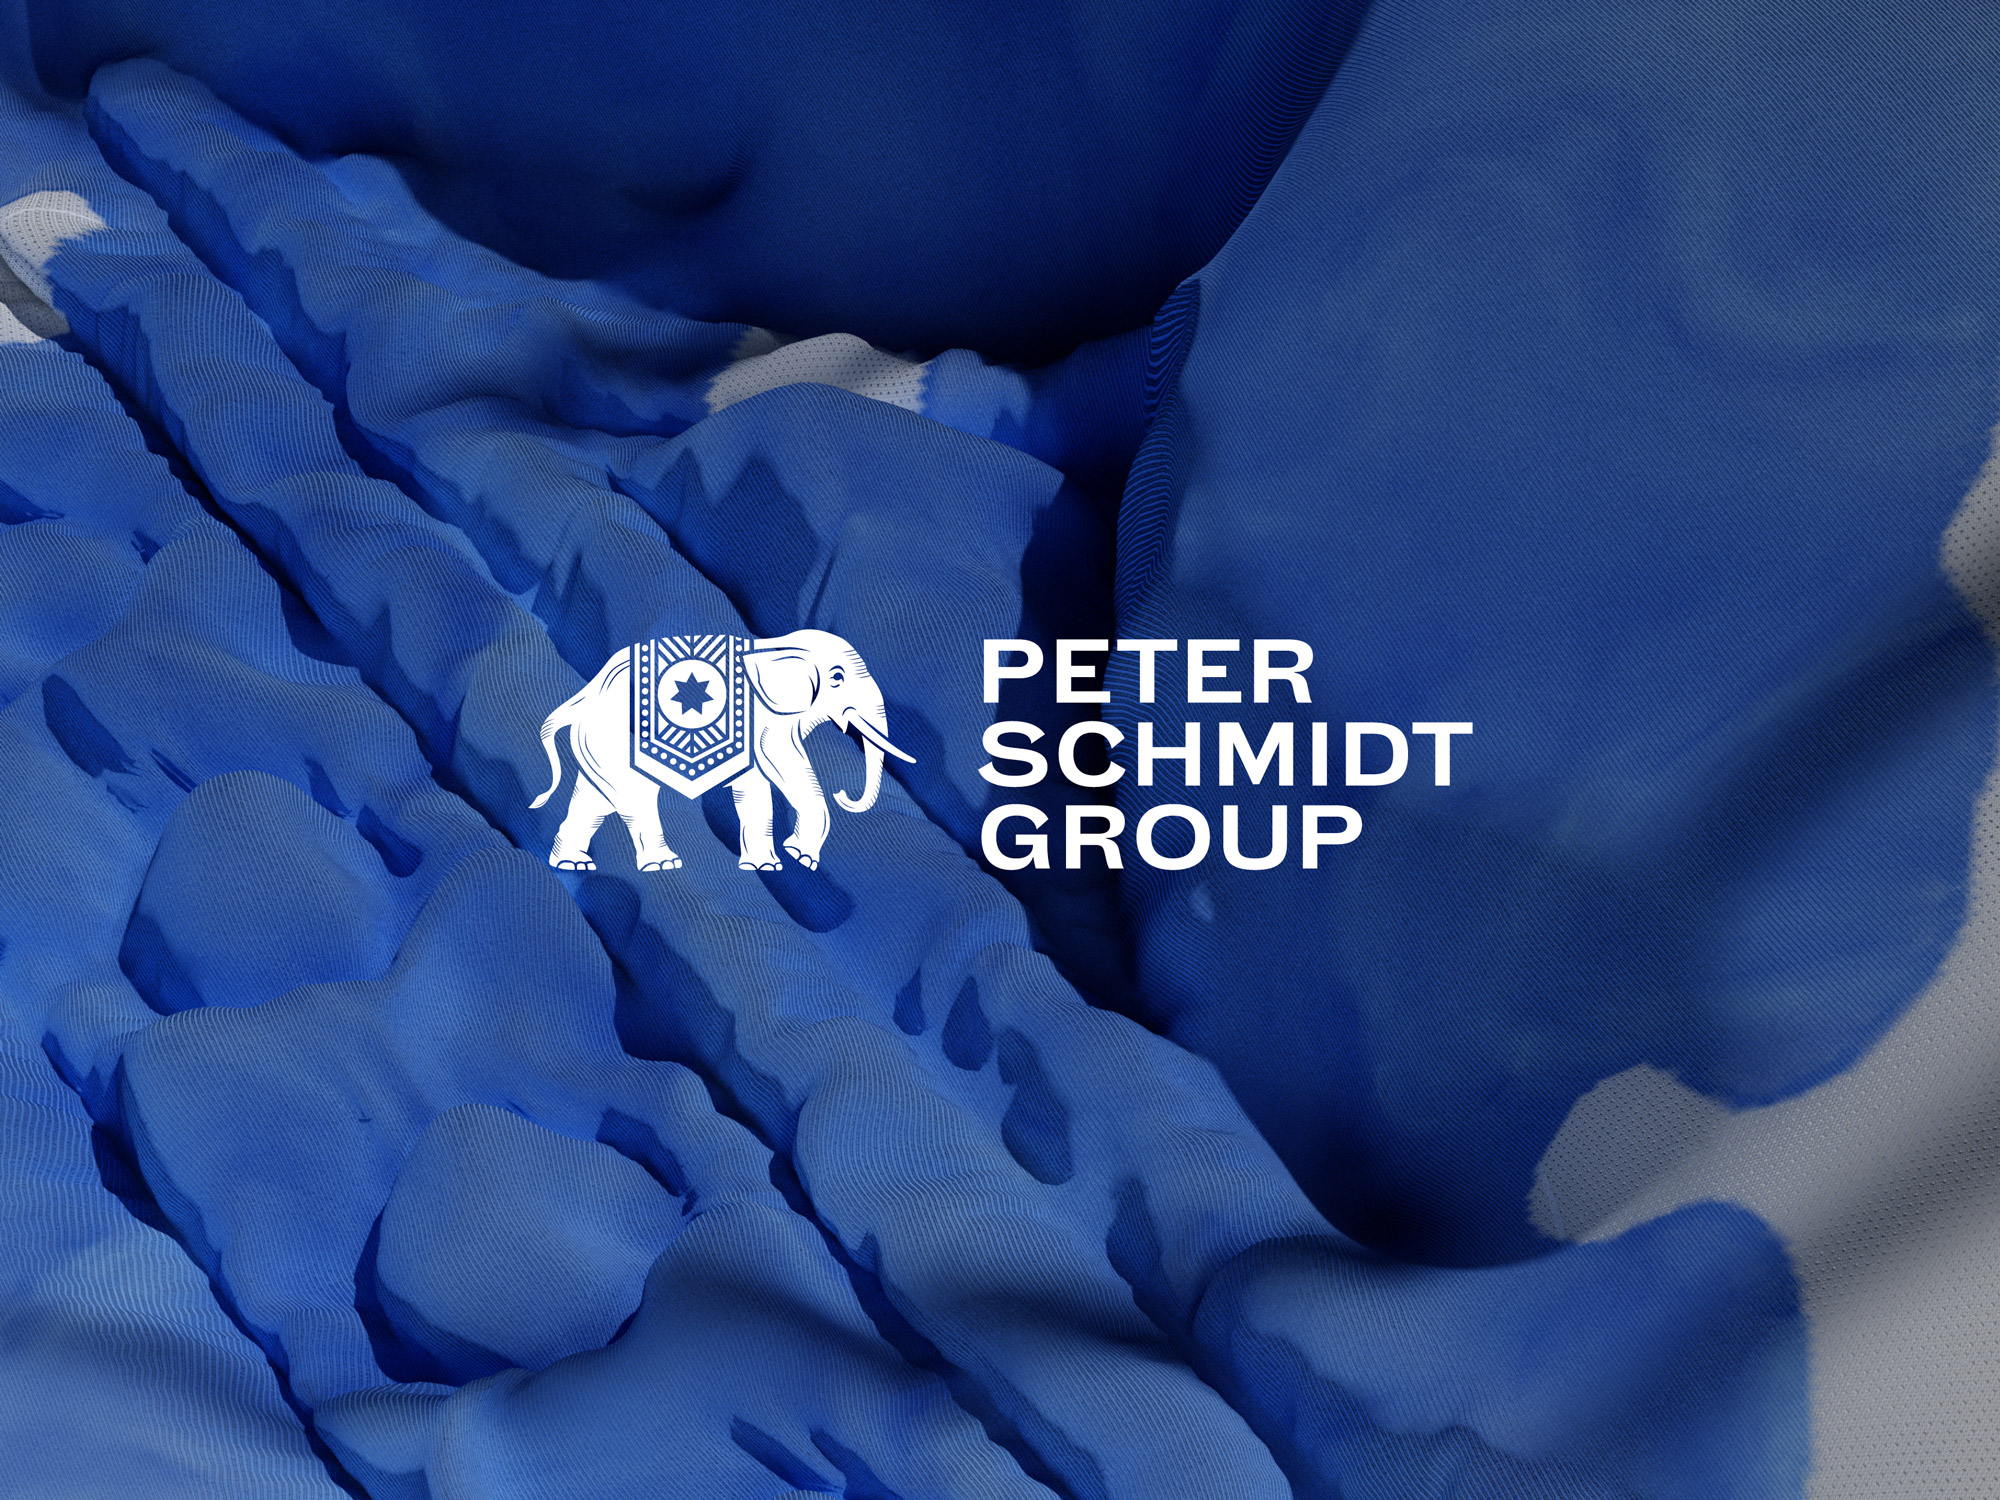 New Branding for the Design Agency Peter Schmidt Group